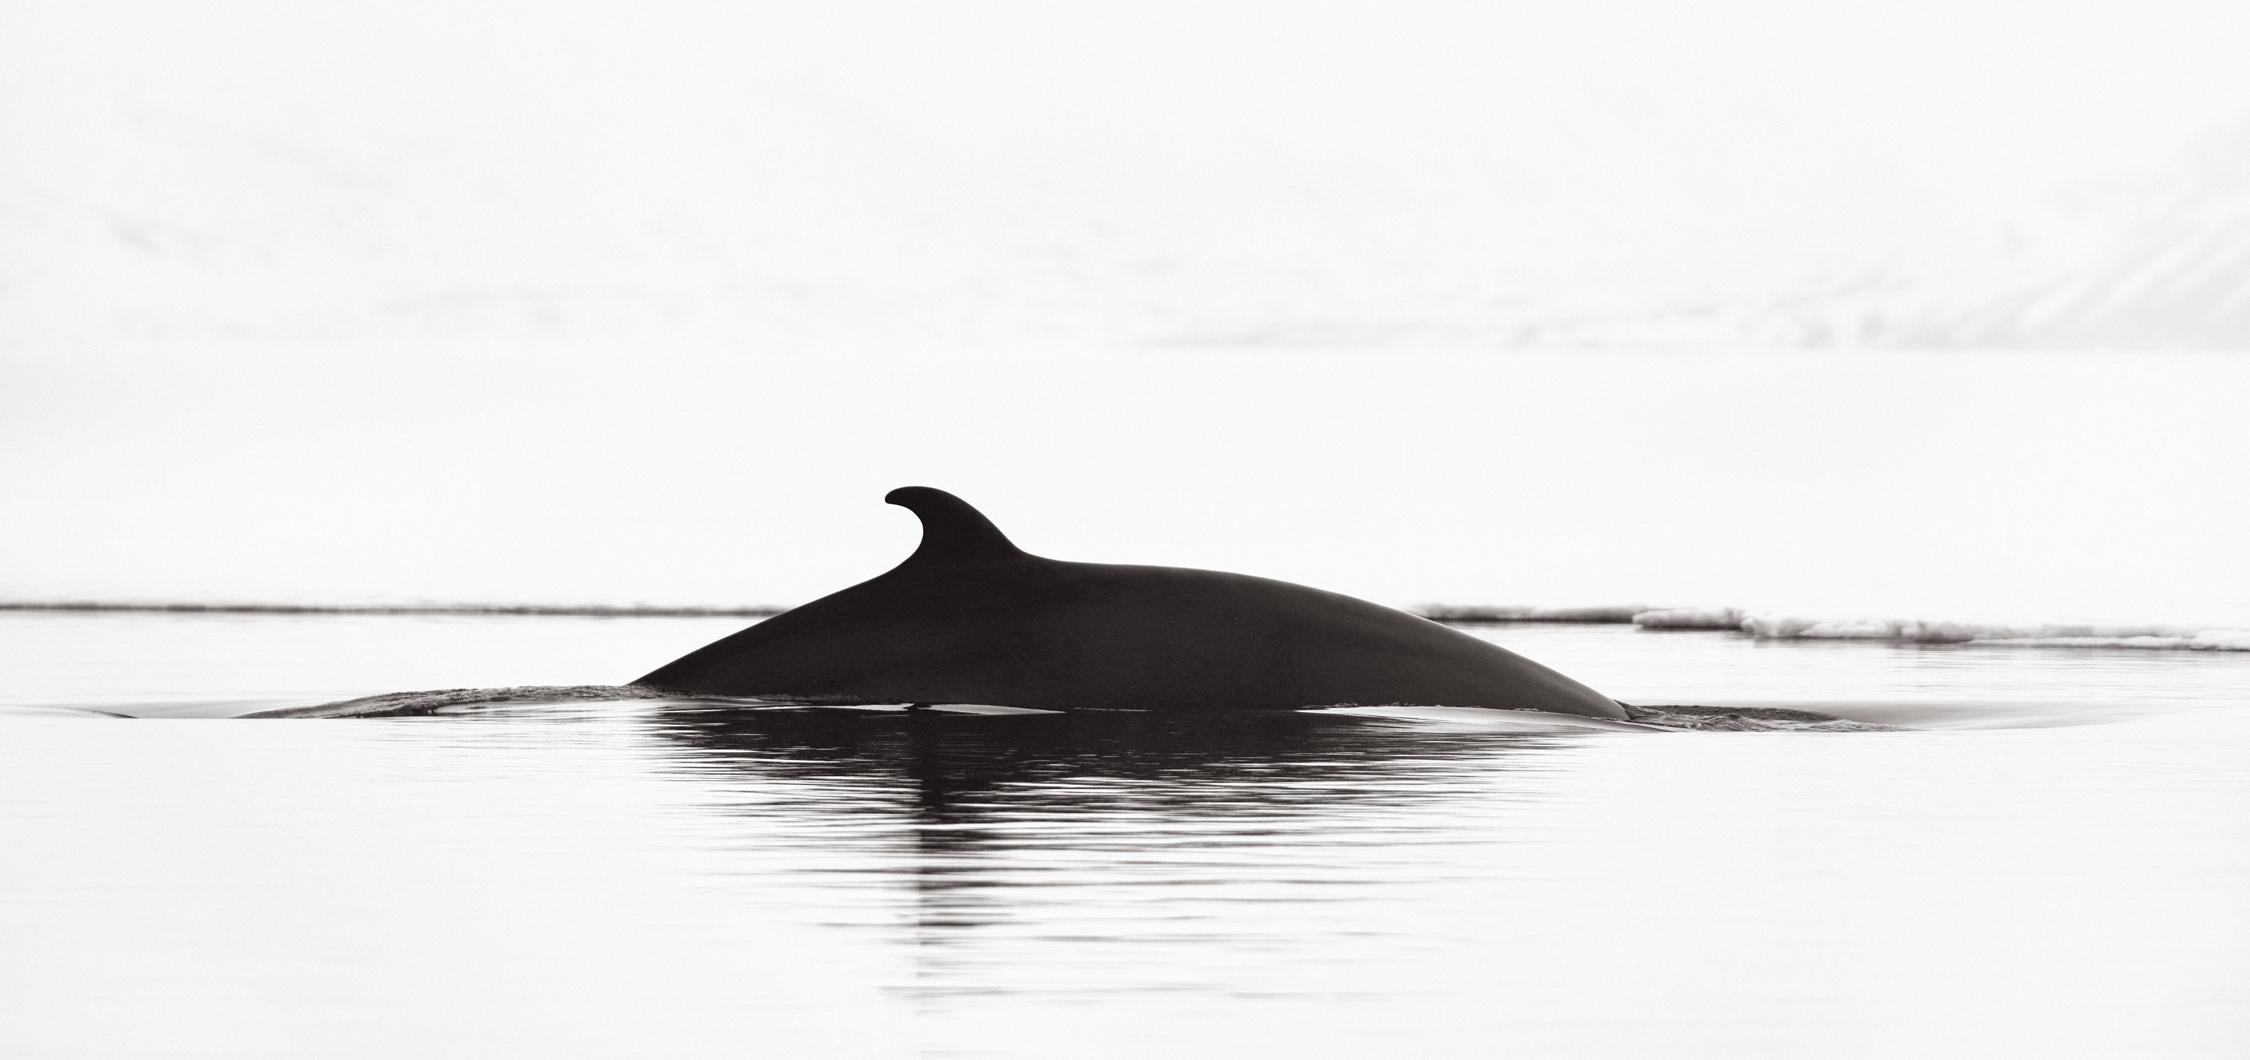 Drew Doggett Black and White Photograph – Surreale, abstrakte Schwarz-Weiß-Fotografie eines Wales beim Surfen